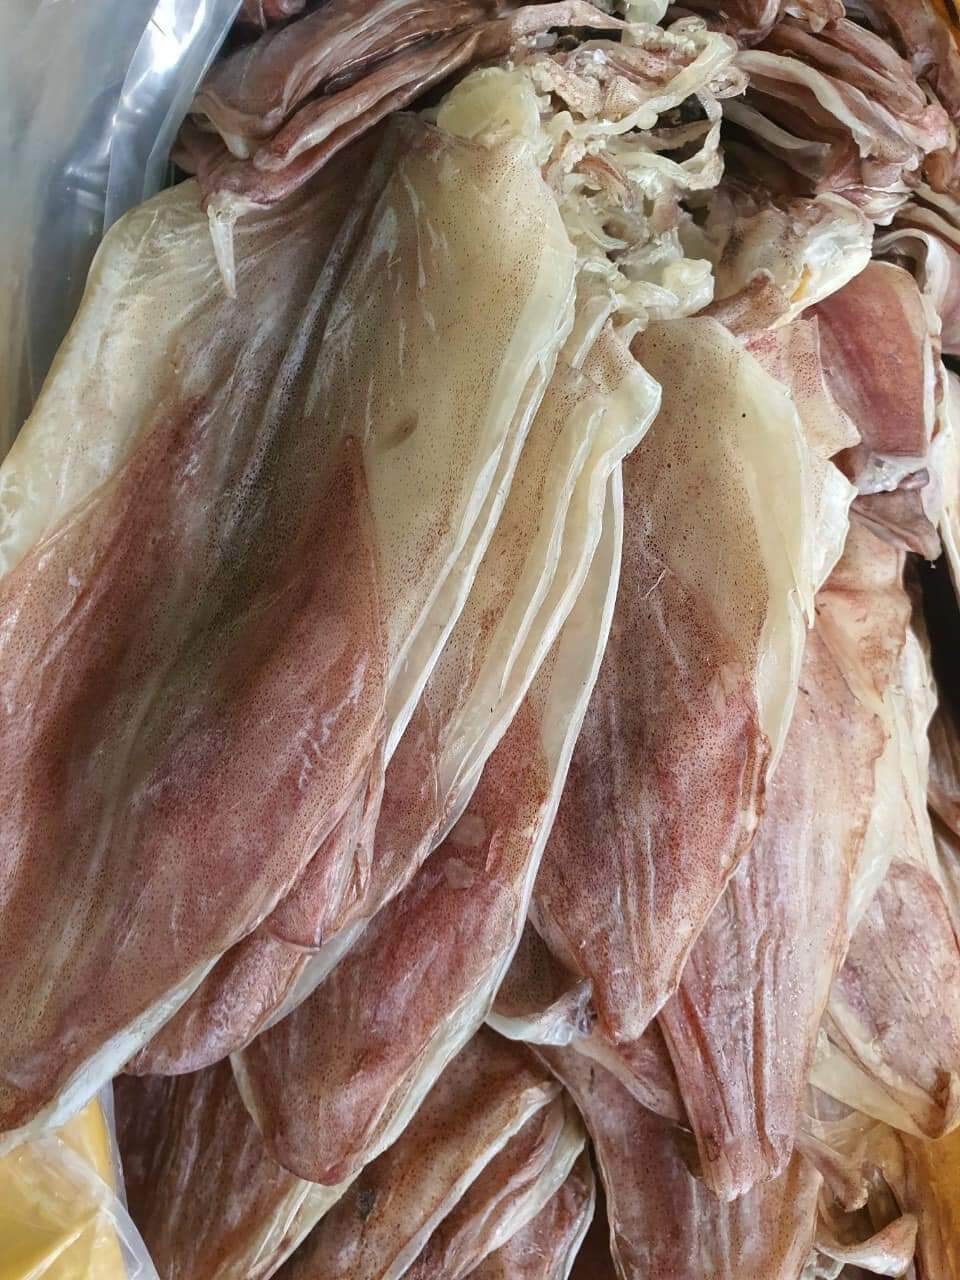 khô mực câu thịt dầy ngọt size 20c đặc sản cà mau